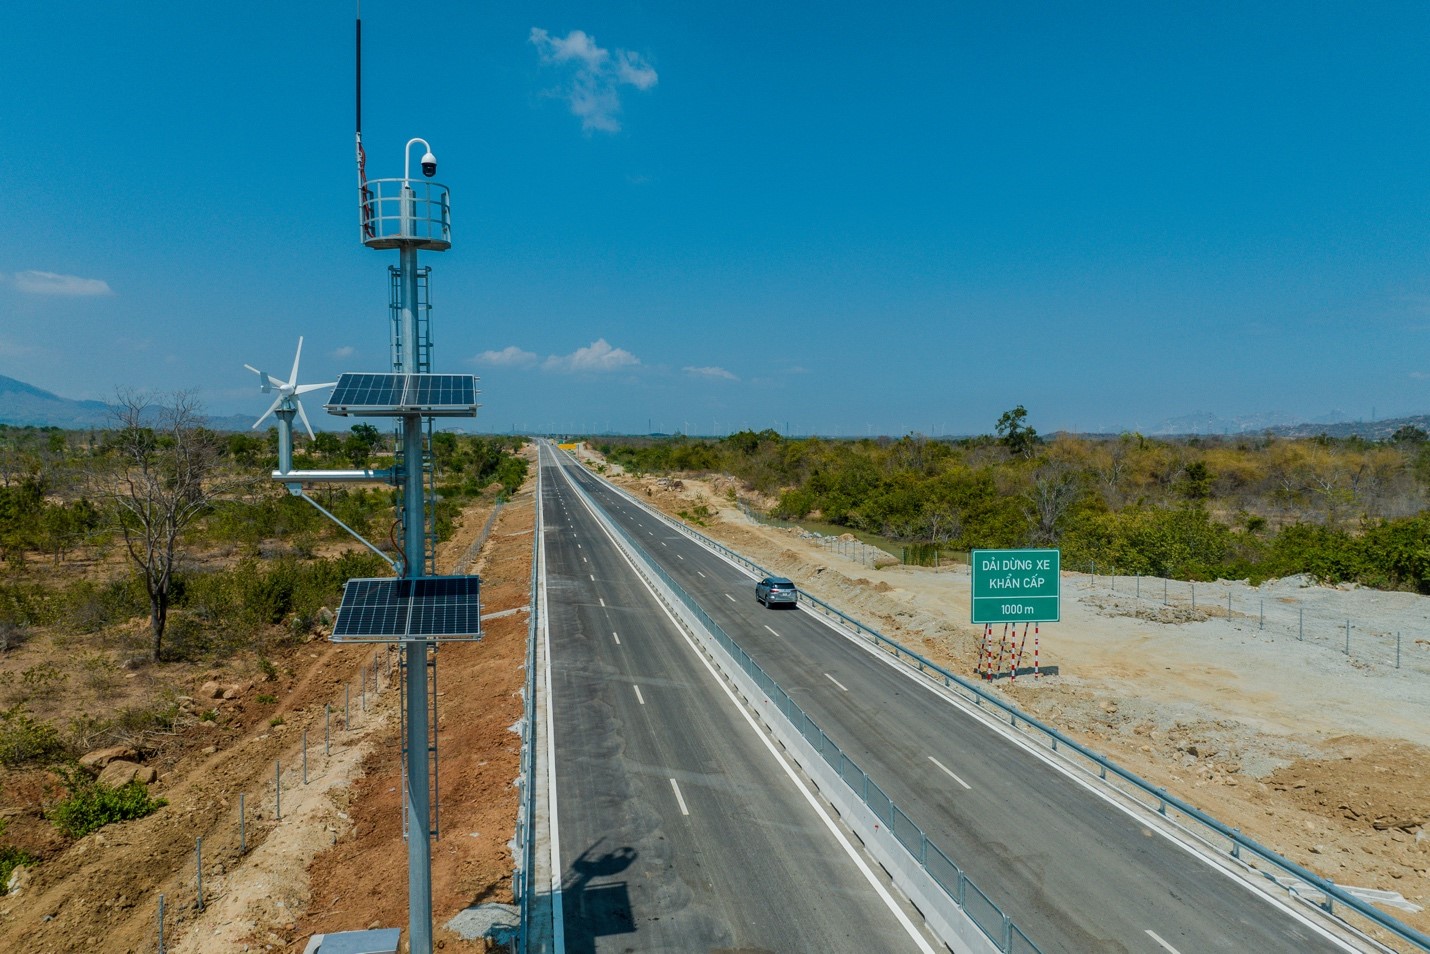 Cao tốc Cam Lâm - Vĩnh Hảo hoàn thiện đồng bộ hệ thống ITS và trạm dừng nghỉ tạm dịp 30/4- Ảnh 1.